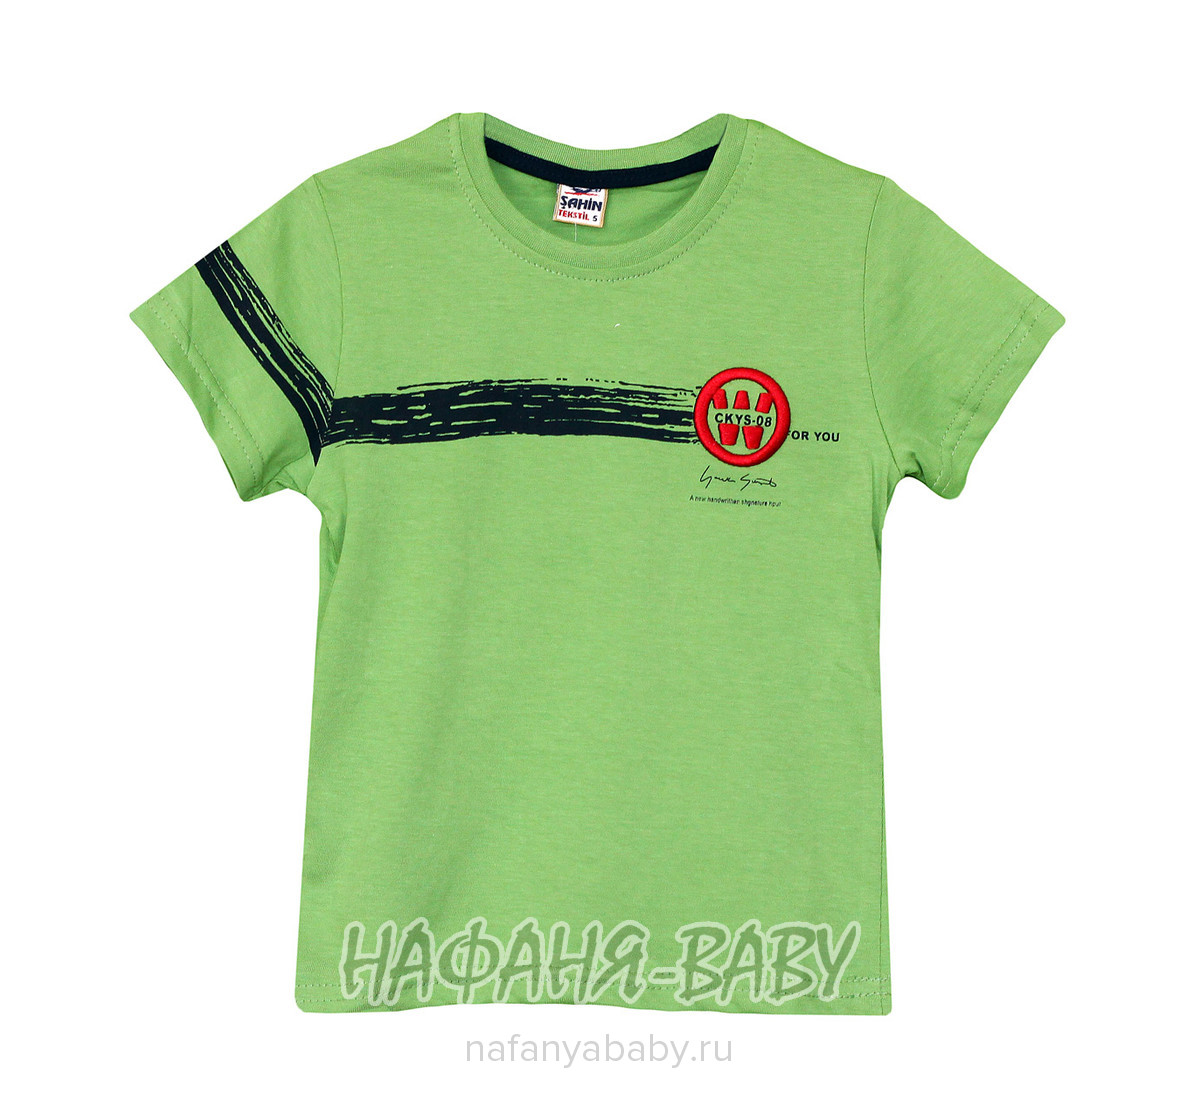 Детская футболка SAHIN арт: 728, 5-9 лет, оптом Турция